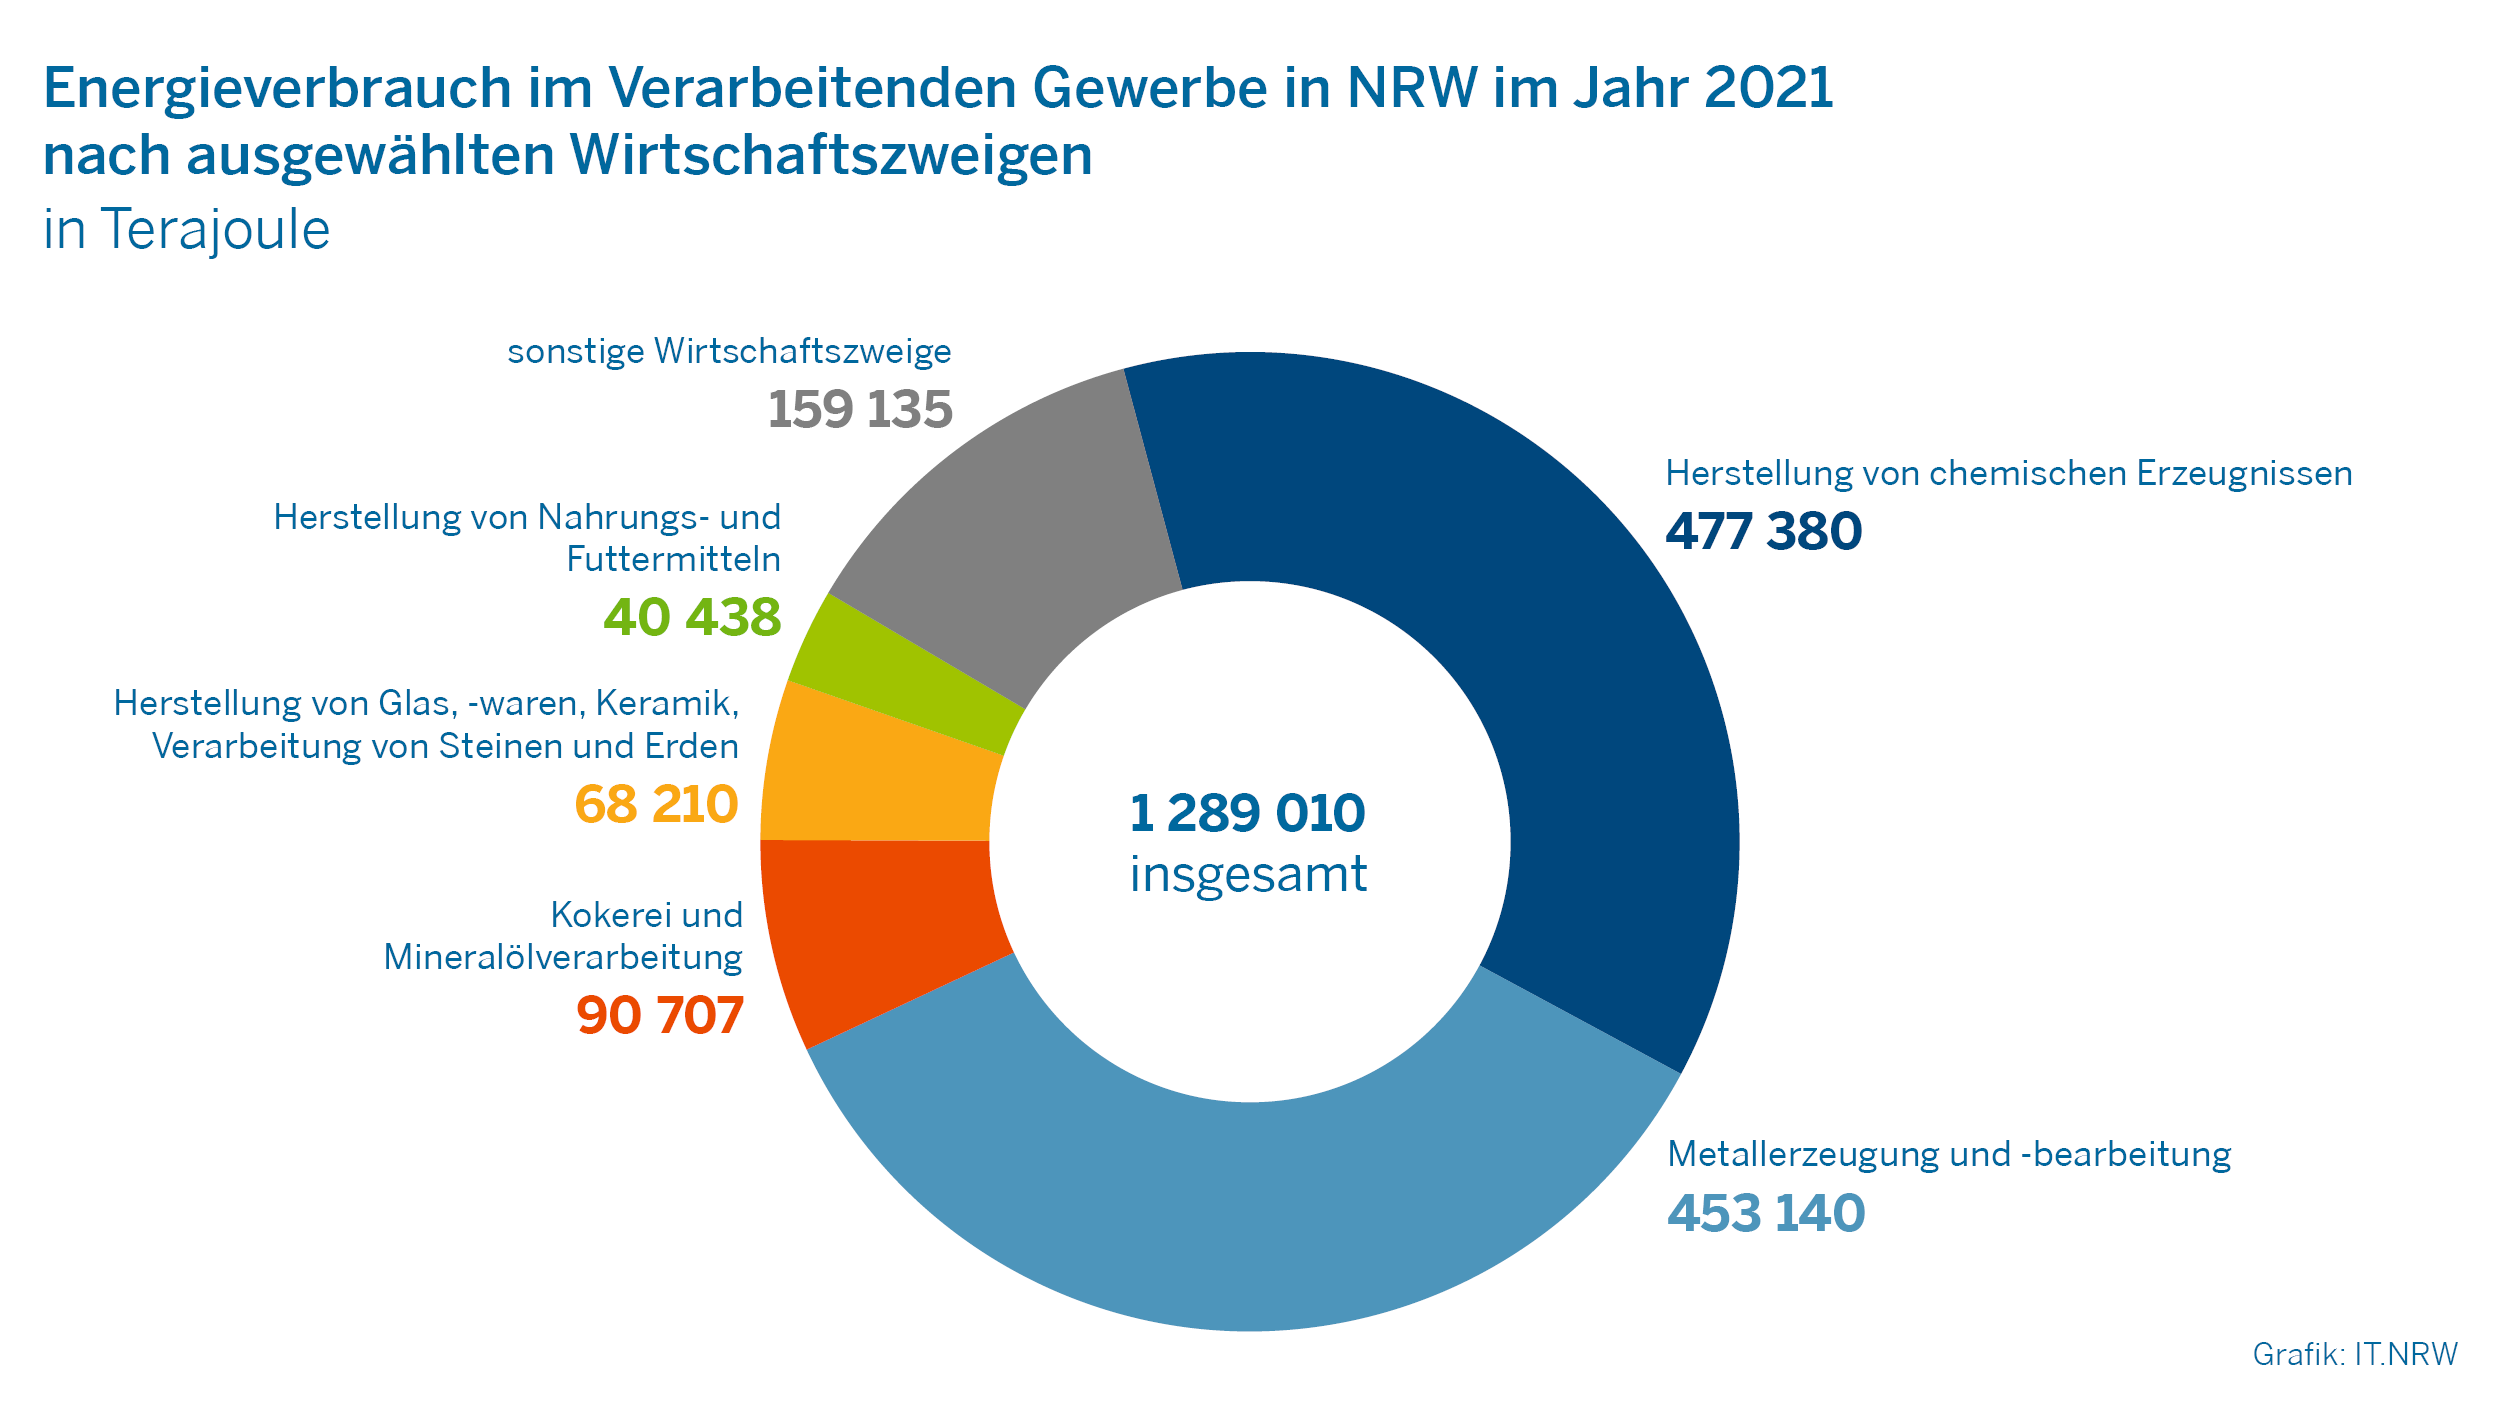 Energieverbrauch im Verarbeitenden Gewerbe in NRW im Jahr 2021 nach ausgewählten Wirtschaftszweigen